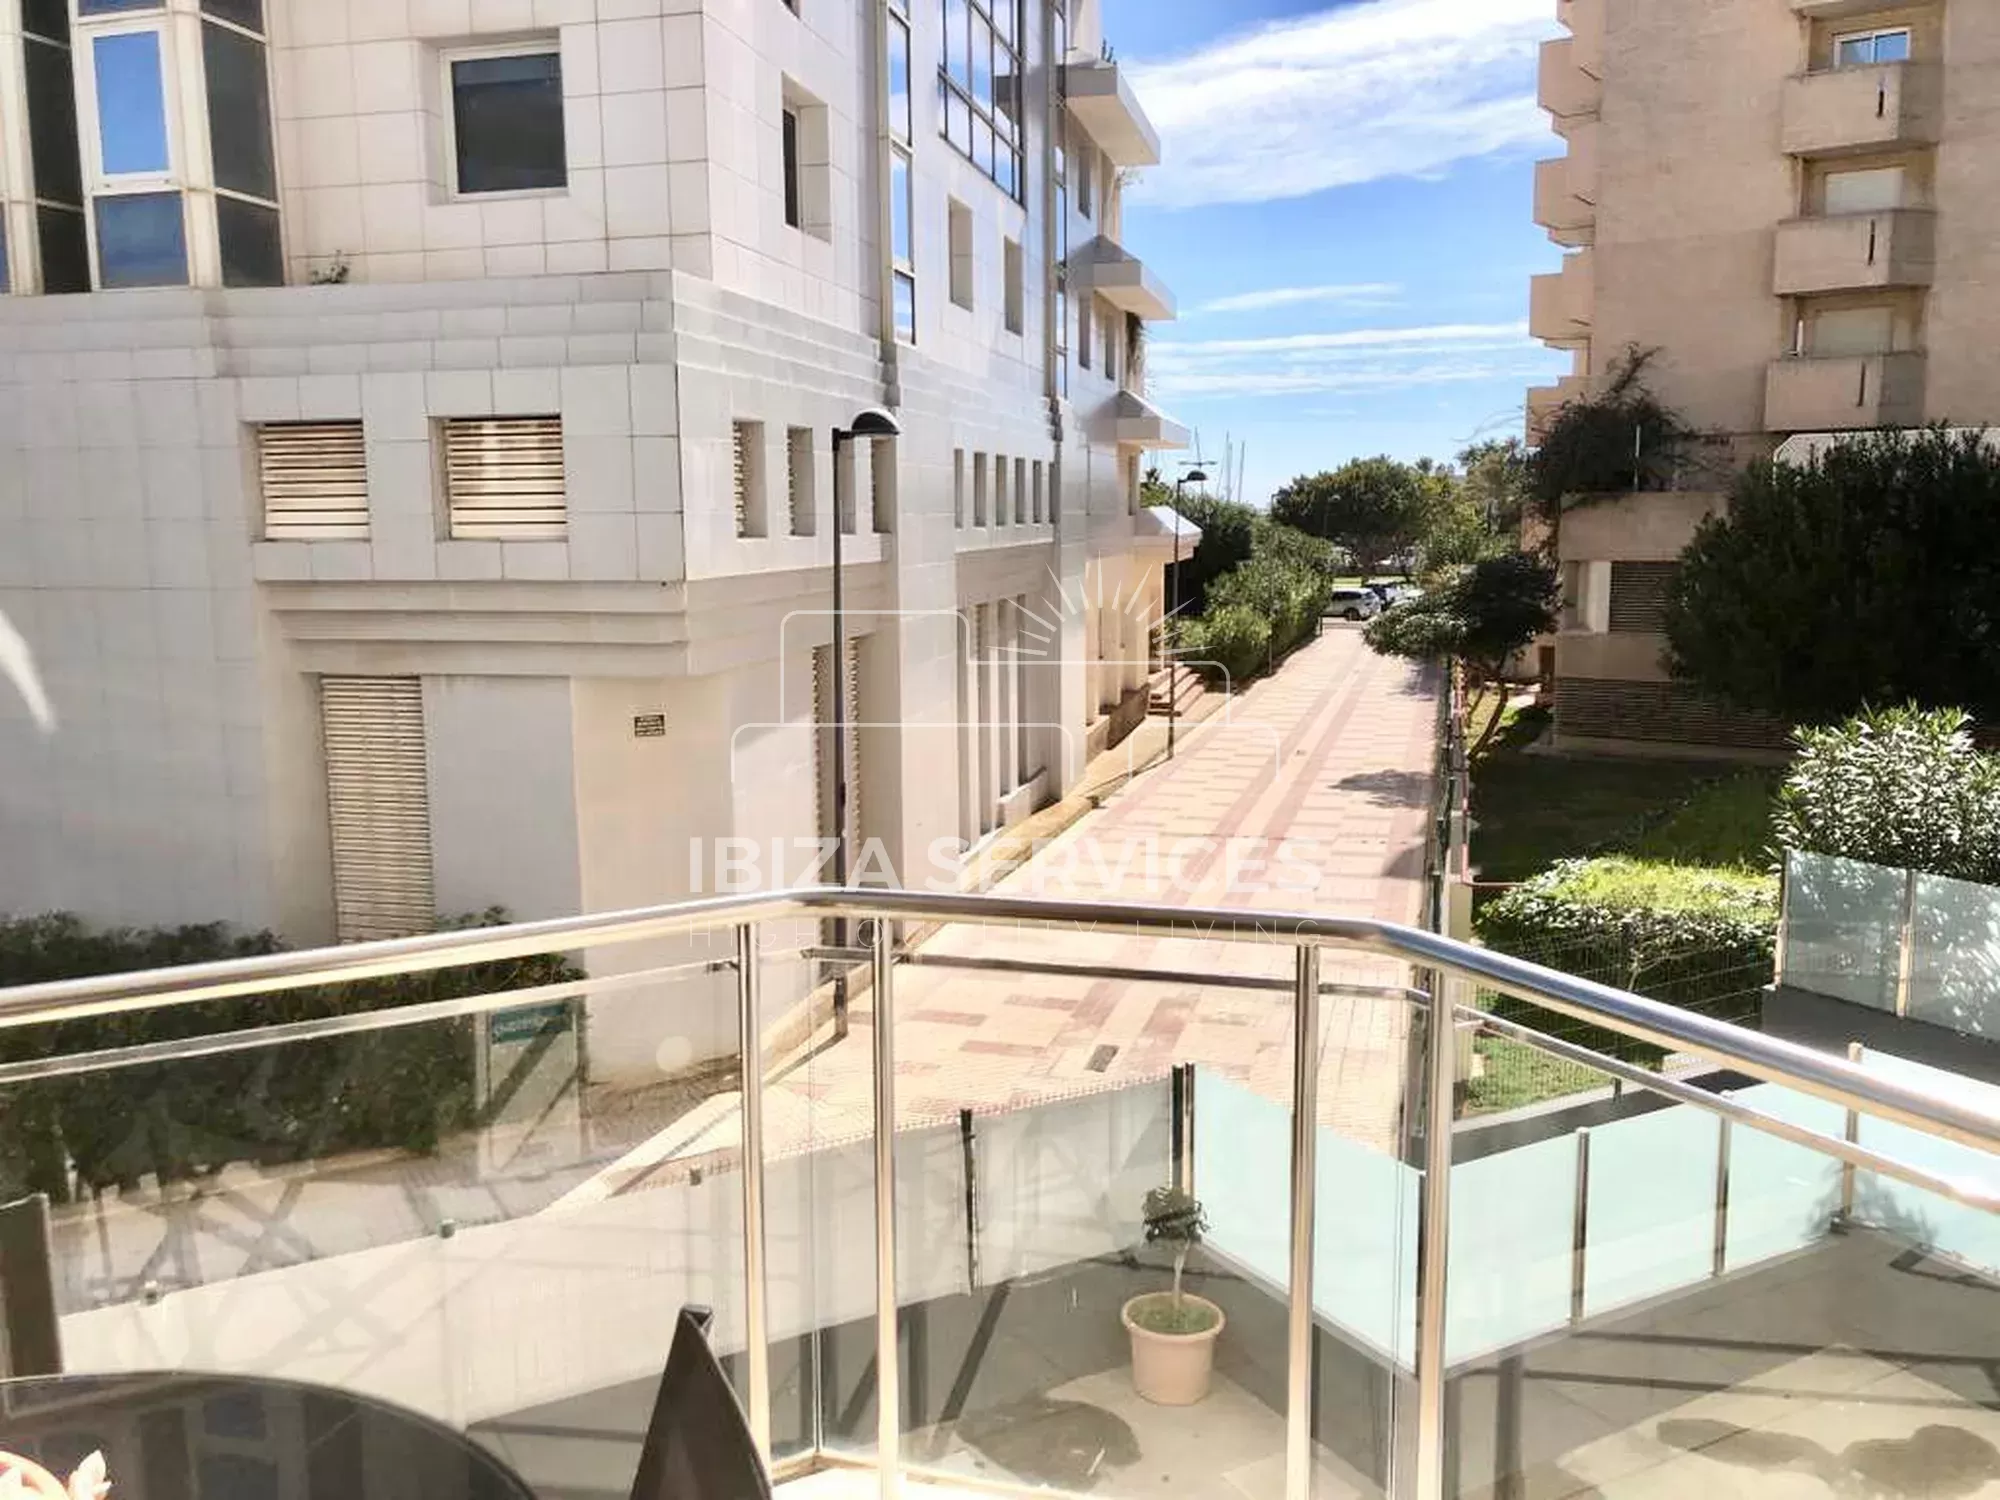 Location Saisonnière : Appartement 2 Chambres Près de la Plage de Talamanca, Ibiza.